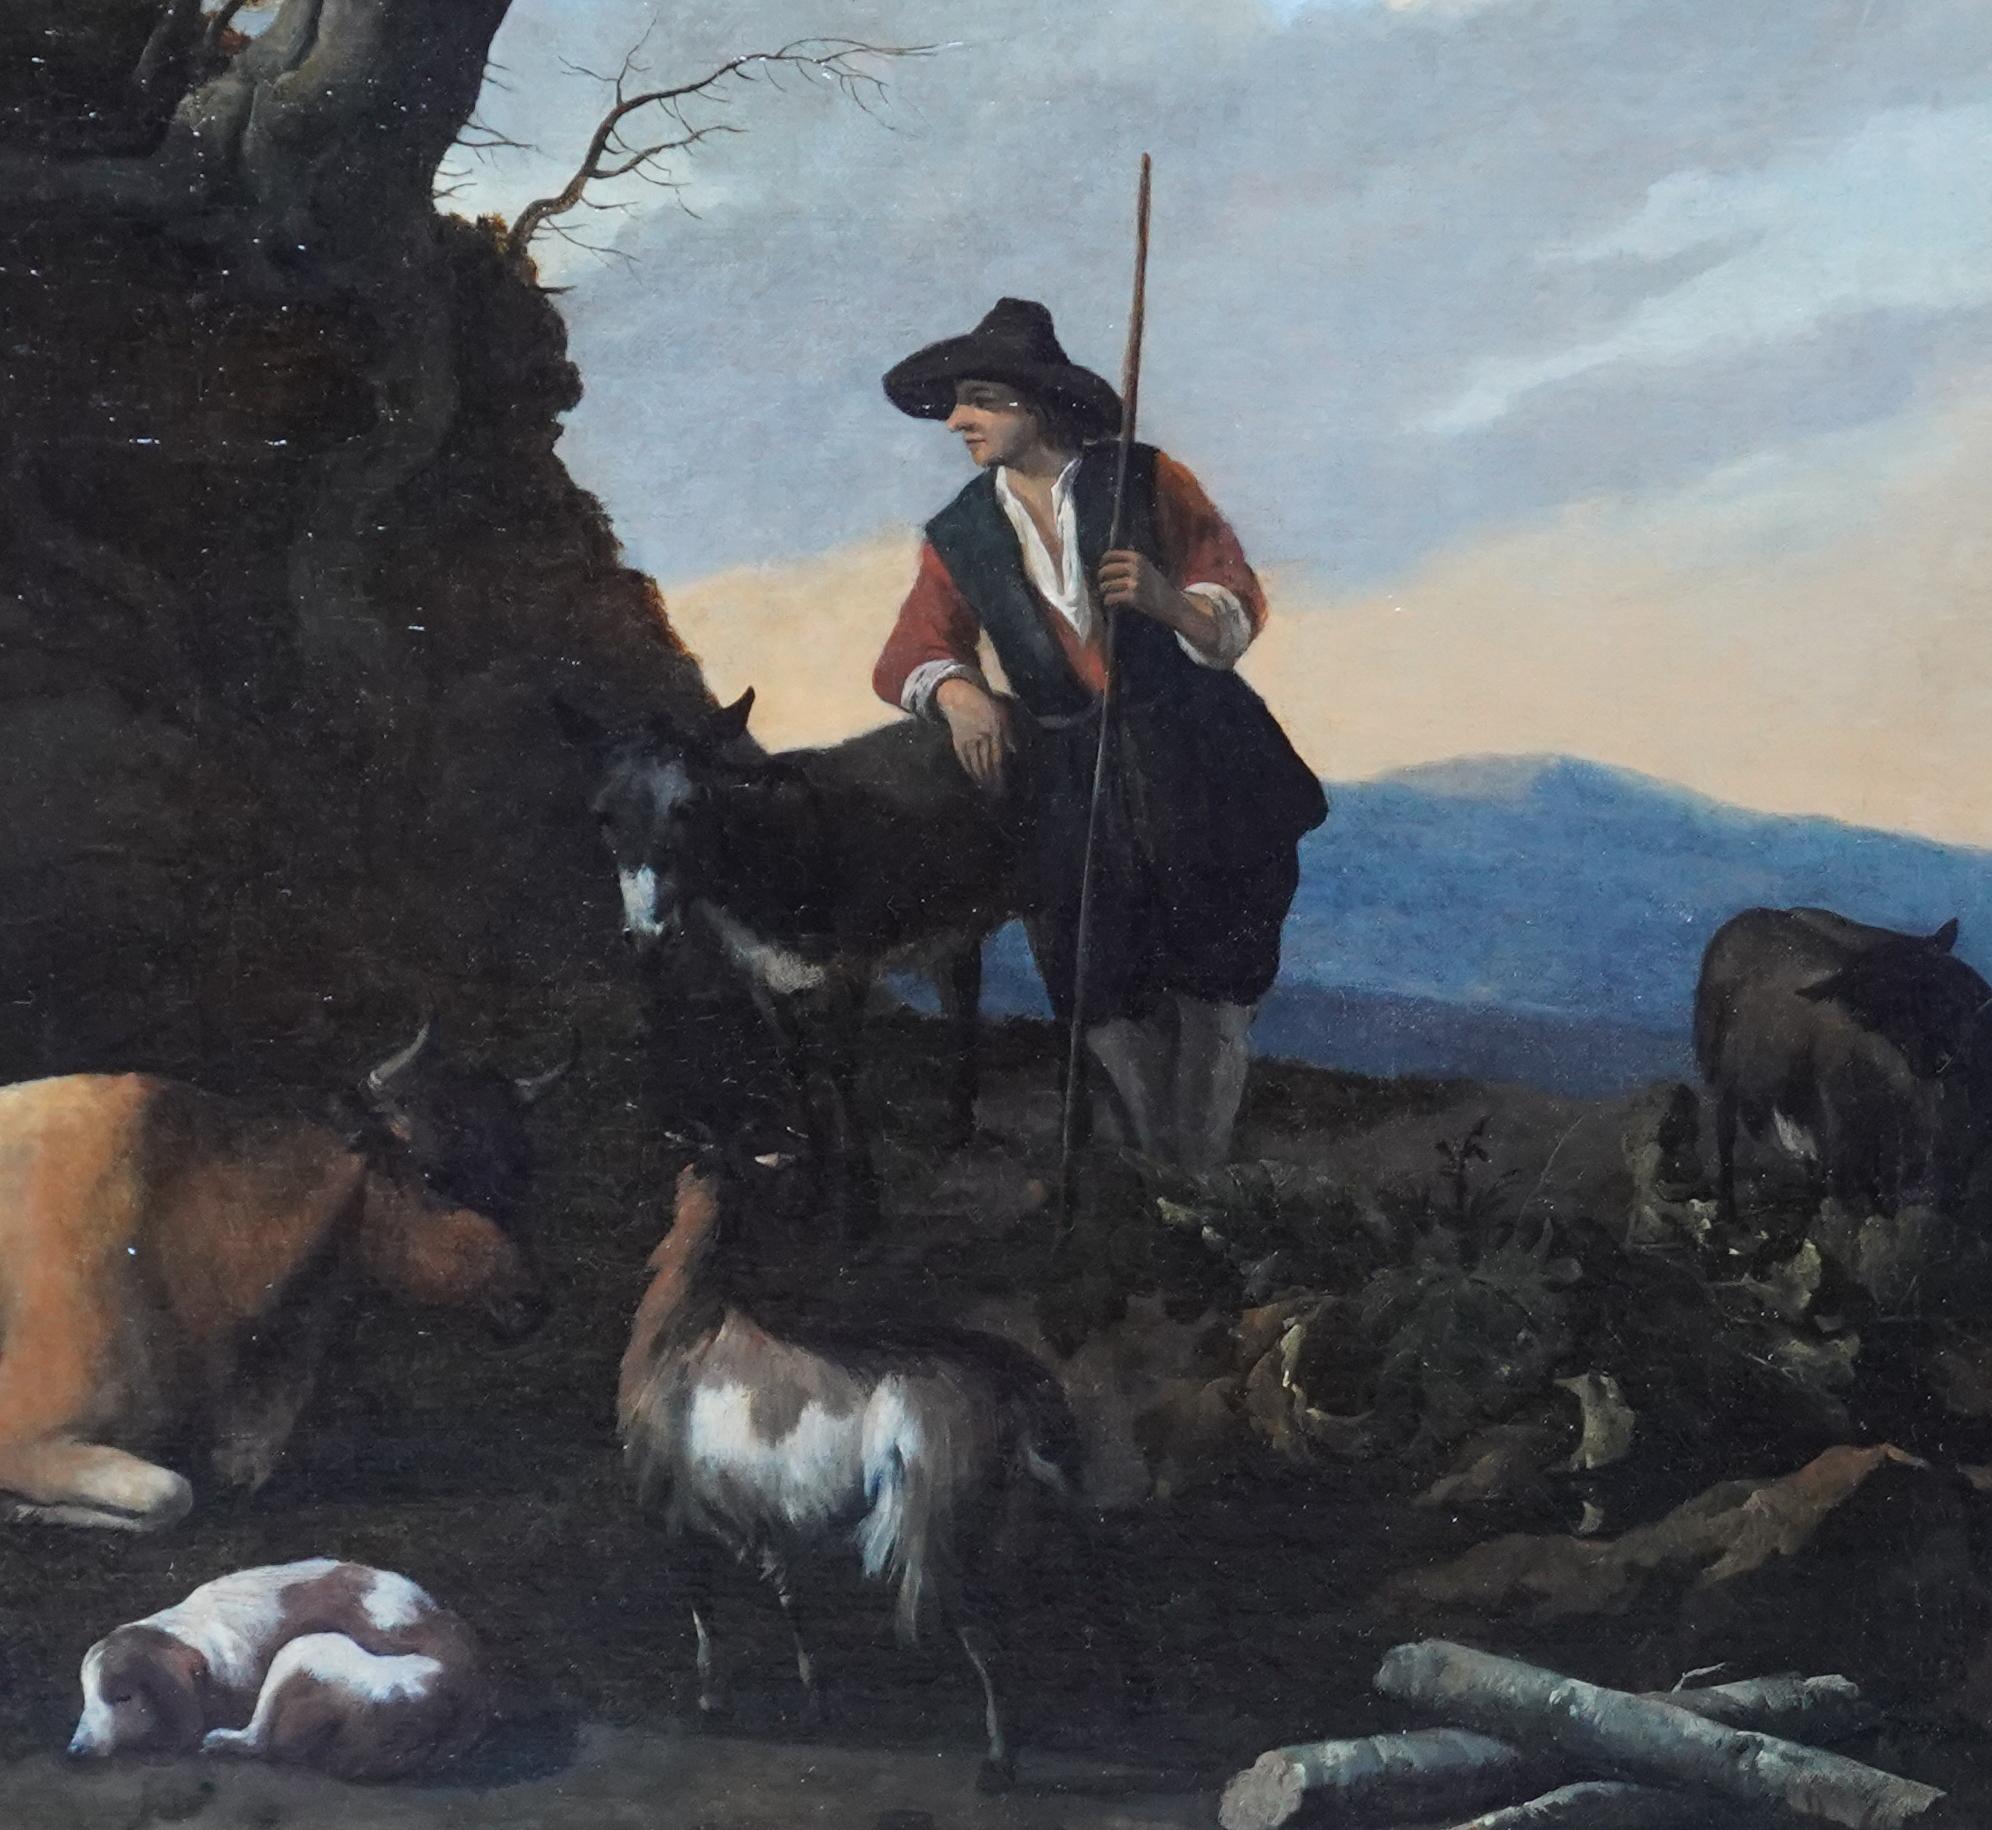 Cette belle peinture à l'huile hollandaise de type Old Master est attribuée à l'artiste hollandais Nicholaes Berchem. Peinte vers 1665, cette charmante scène pastorale représente un berger et ses animaux, notamment des moutons, des chèvres, un âne